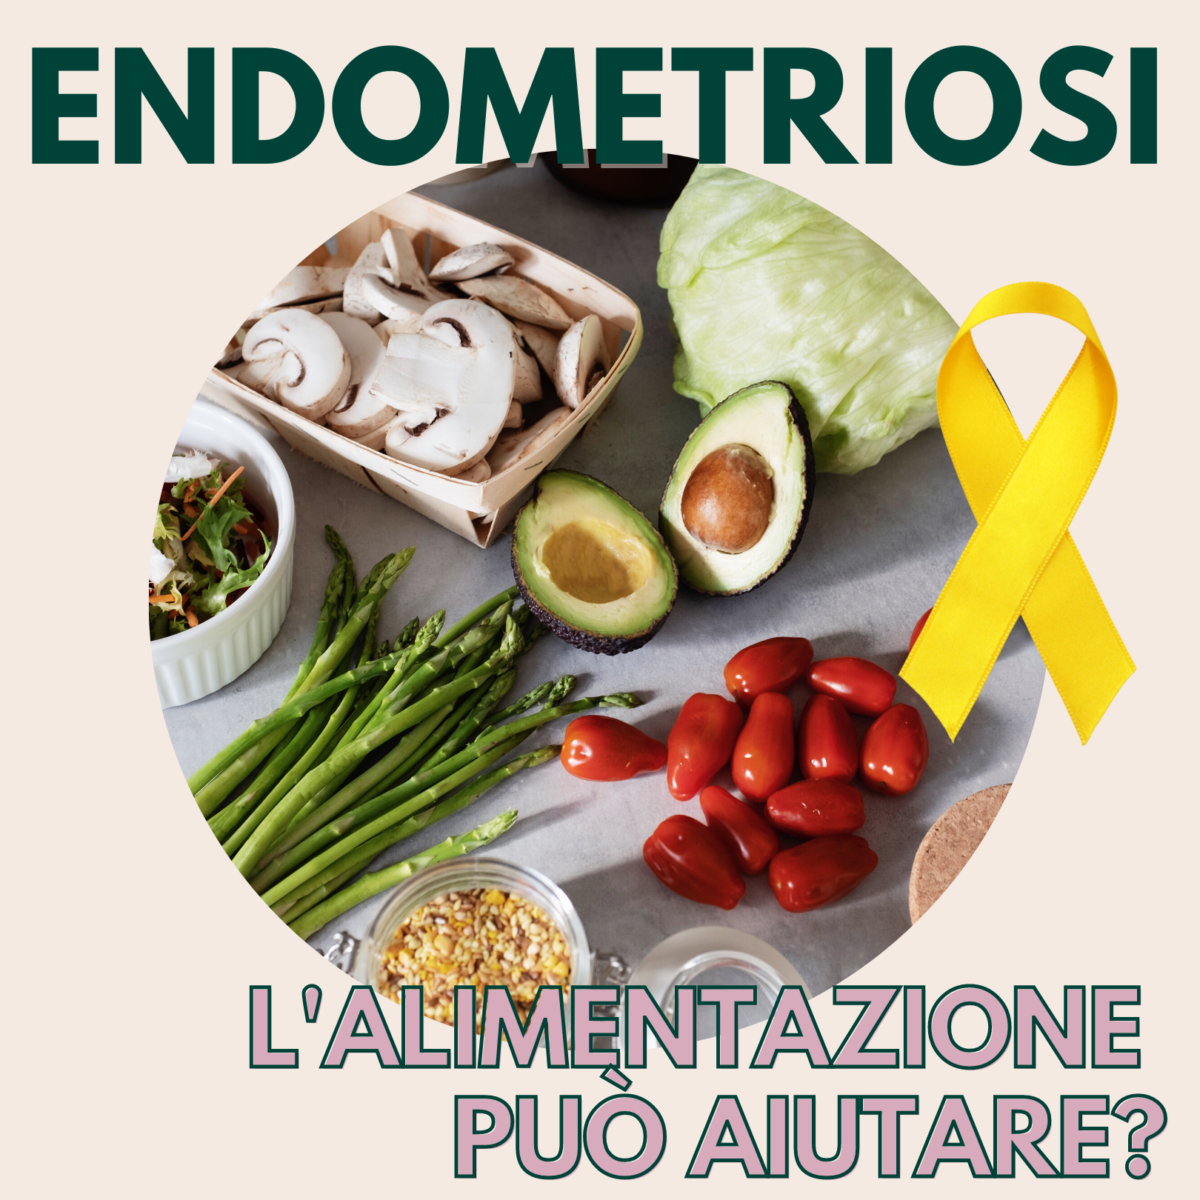 Endometriosi-lalimentazione-puo-aiutare-Mariachiara-Allori-1200x1200.png